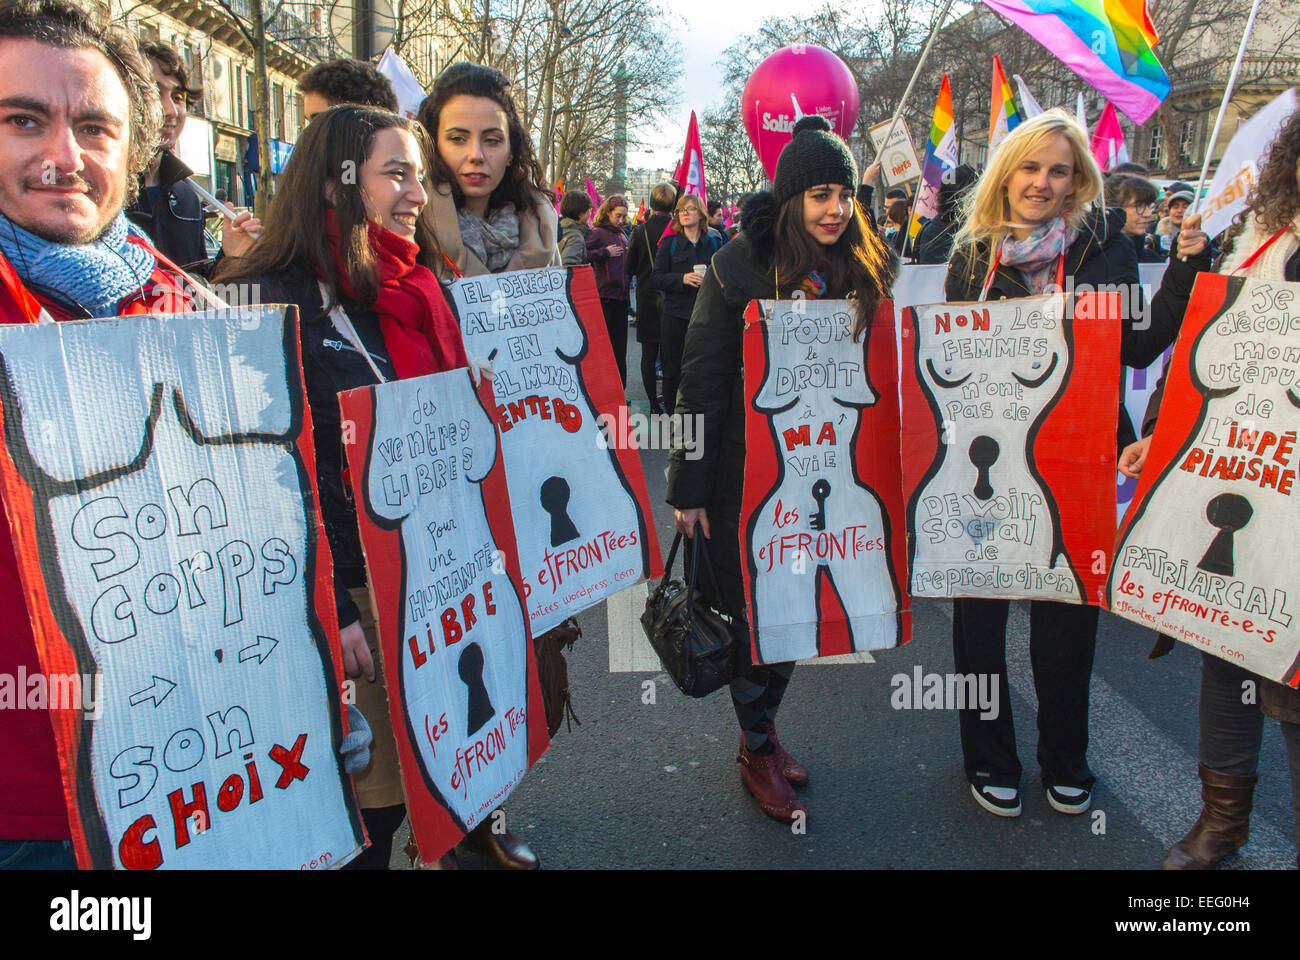 Paris, France, Groupe d'ONG françaises, manifestation féministe en l'honneur de l'anniversaire de la légalisation de la loi sur l'avortement, rassemblement des femmes, tenant des panneaux de protestation 'mon corps, mon choix' 'Pro choix' mouvement pour les droits des femmes, marche pour les droits des femmes, manifestations pro avortement, panneaux pour l'autonomisation des femmes Banque D'Images